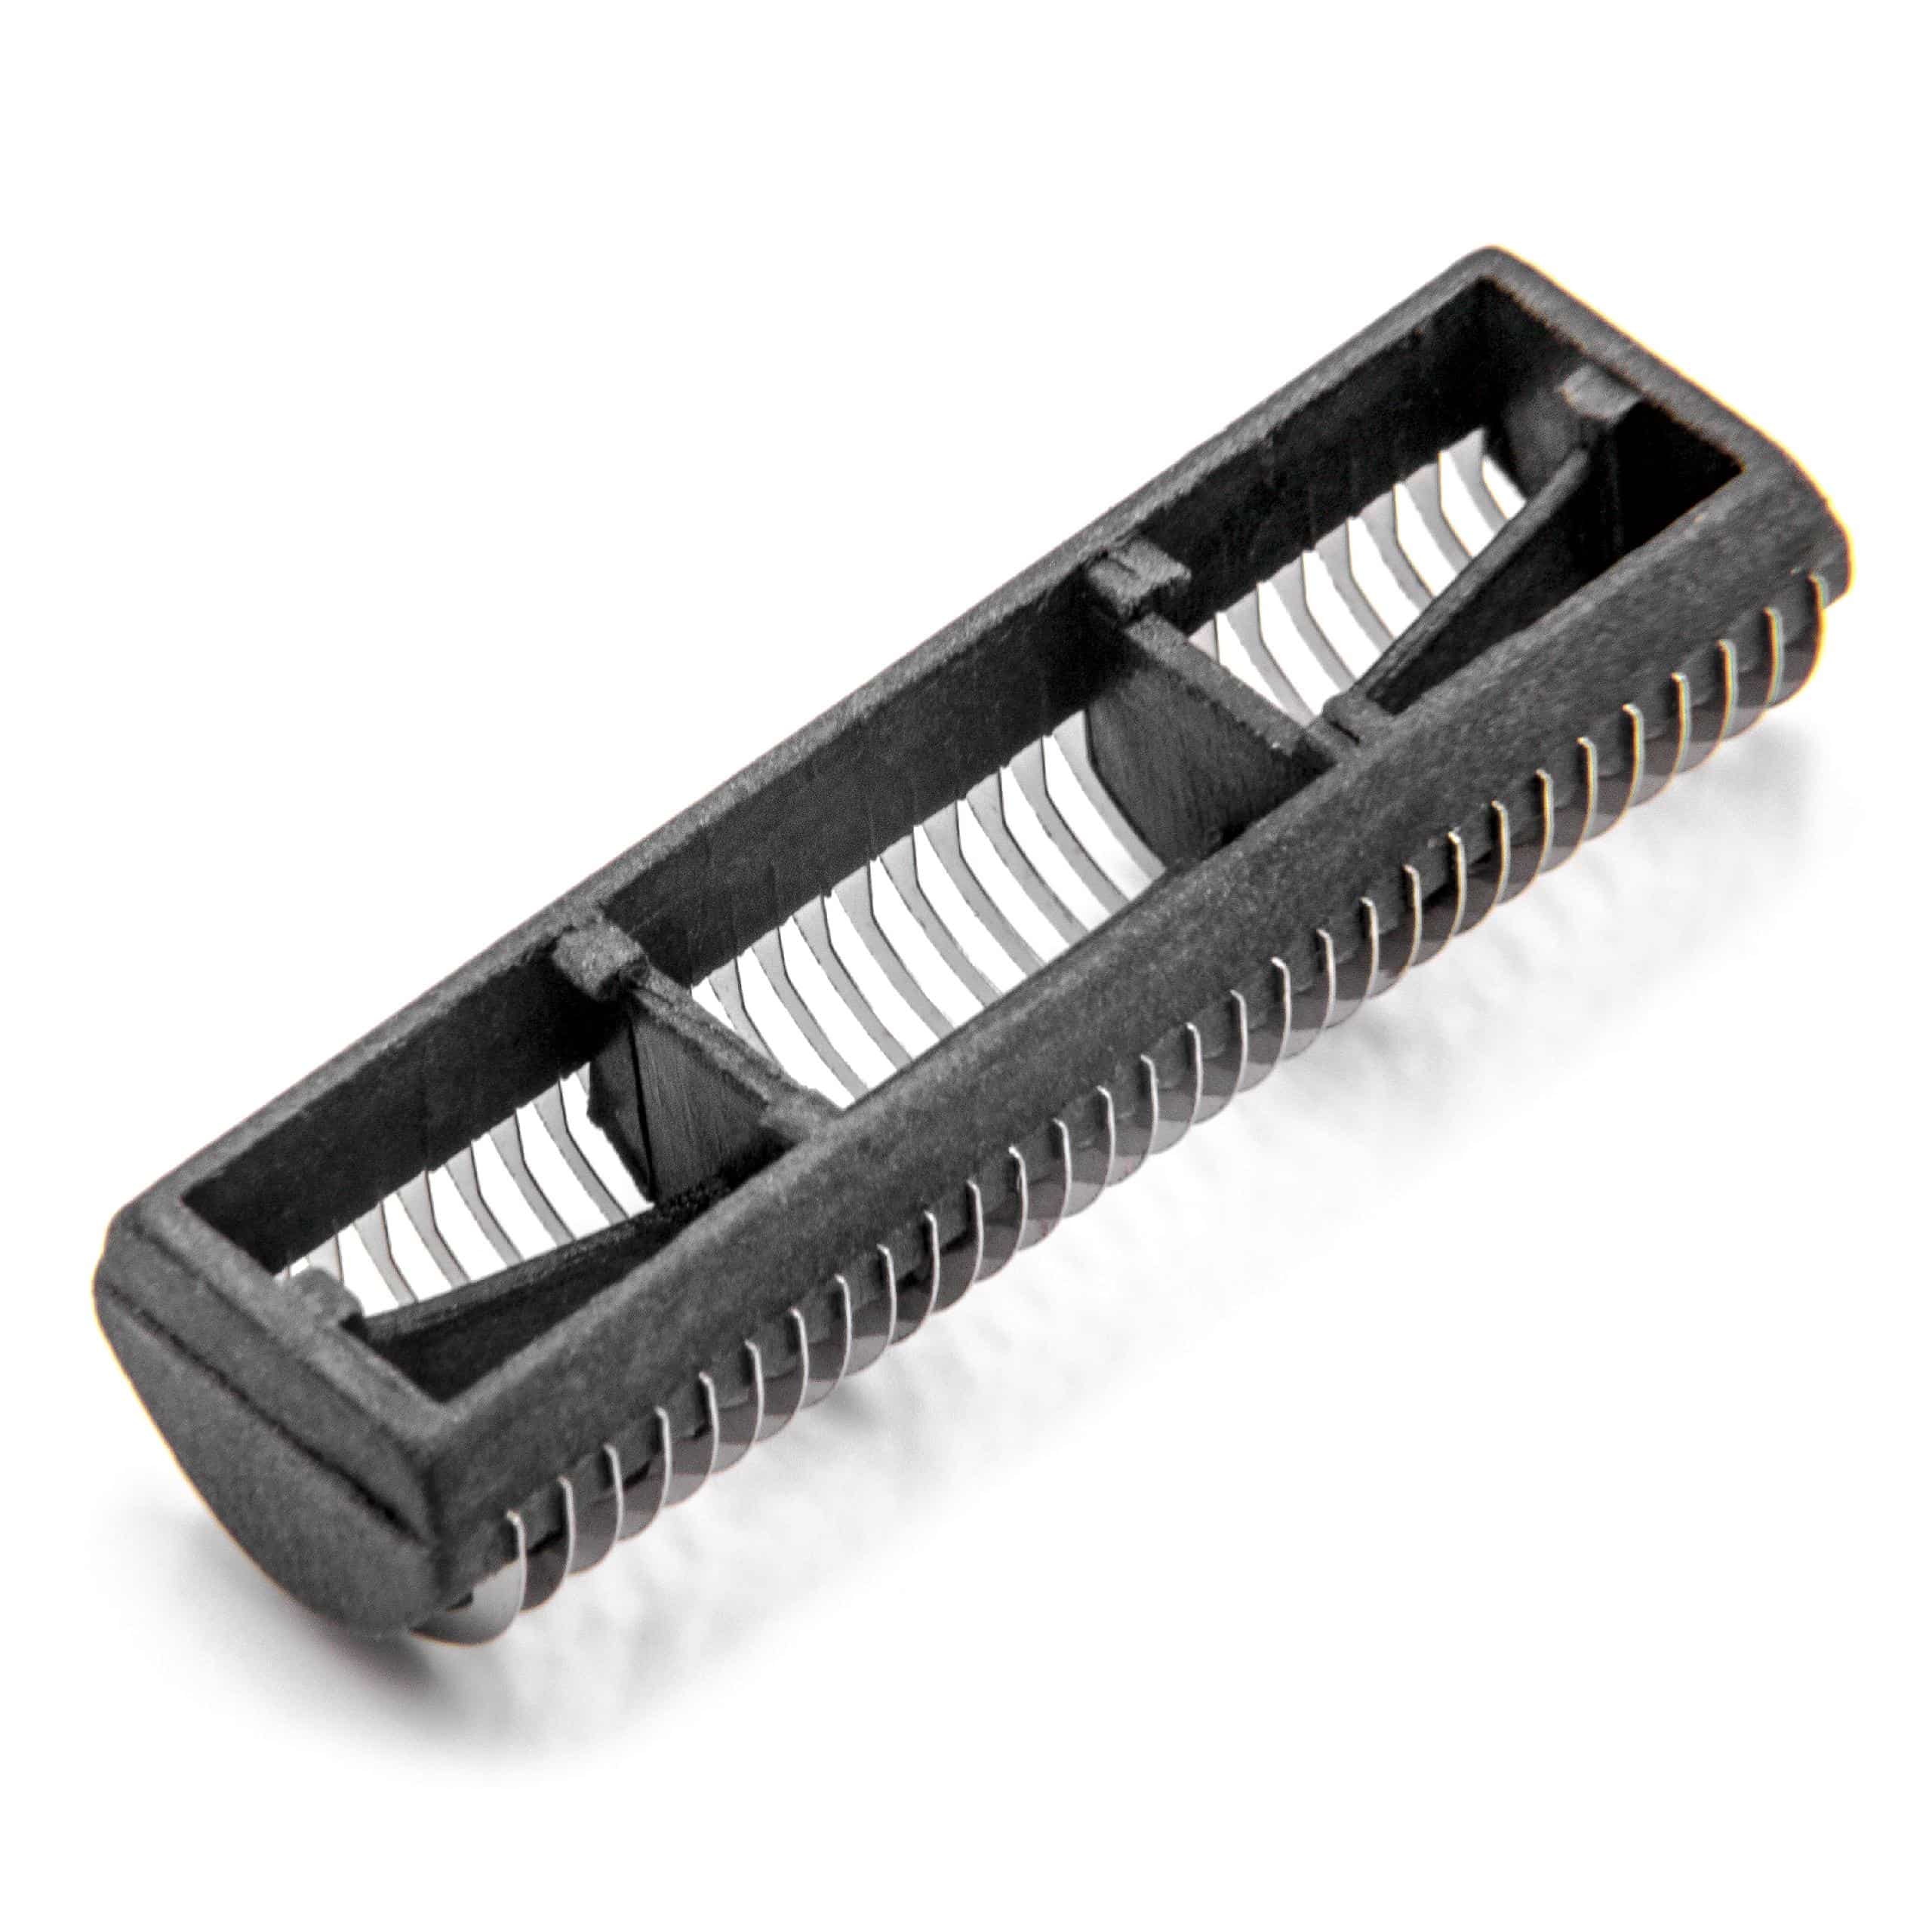 Combi Pack Shaver Part suitable for Braun S Razor - Foil + Blades, Black/Silver